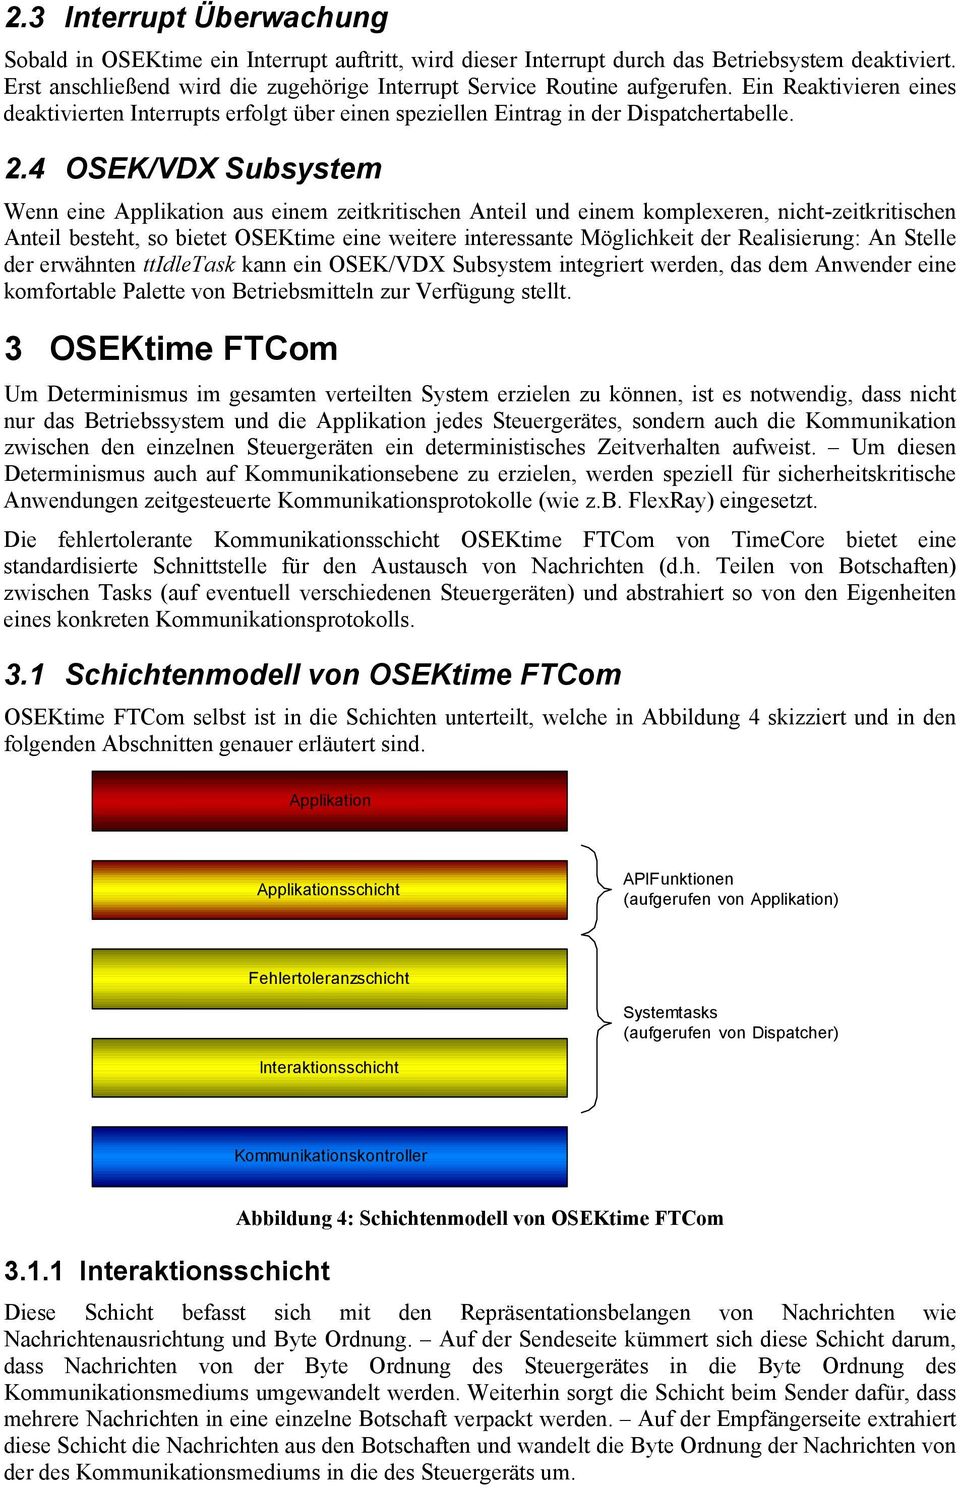 4 OSEK/VDX Subsystem Wenn eine Applikation aus einem zeitkritischen Anteil und einem komplexeren, nicht-zeitkritischen Anteil besteht, so bietet OSEKtime eine weitere interessante Möglichkeit der